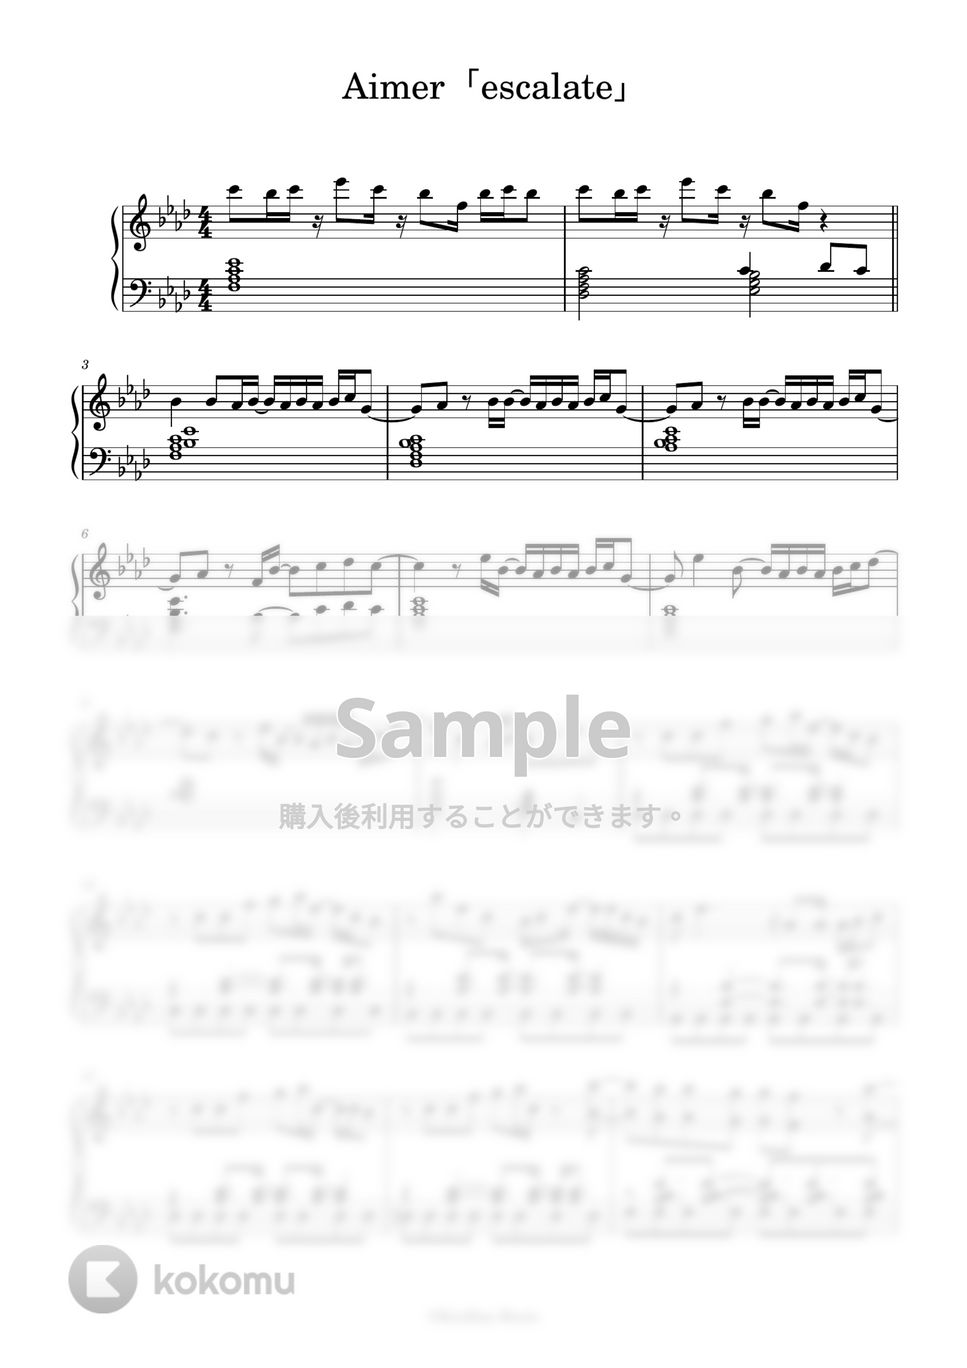 Aimer - escalate (「NieR:Automata Ver1.1a」オープニングテーマ) by KenBan